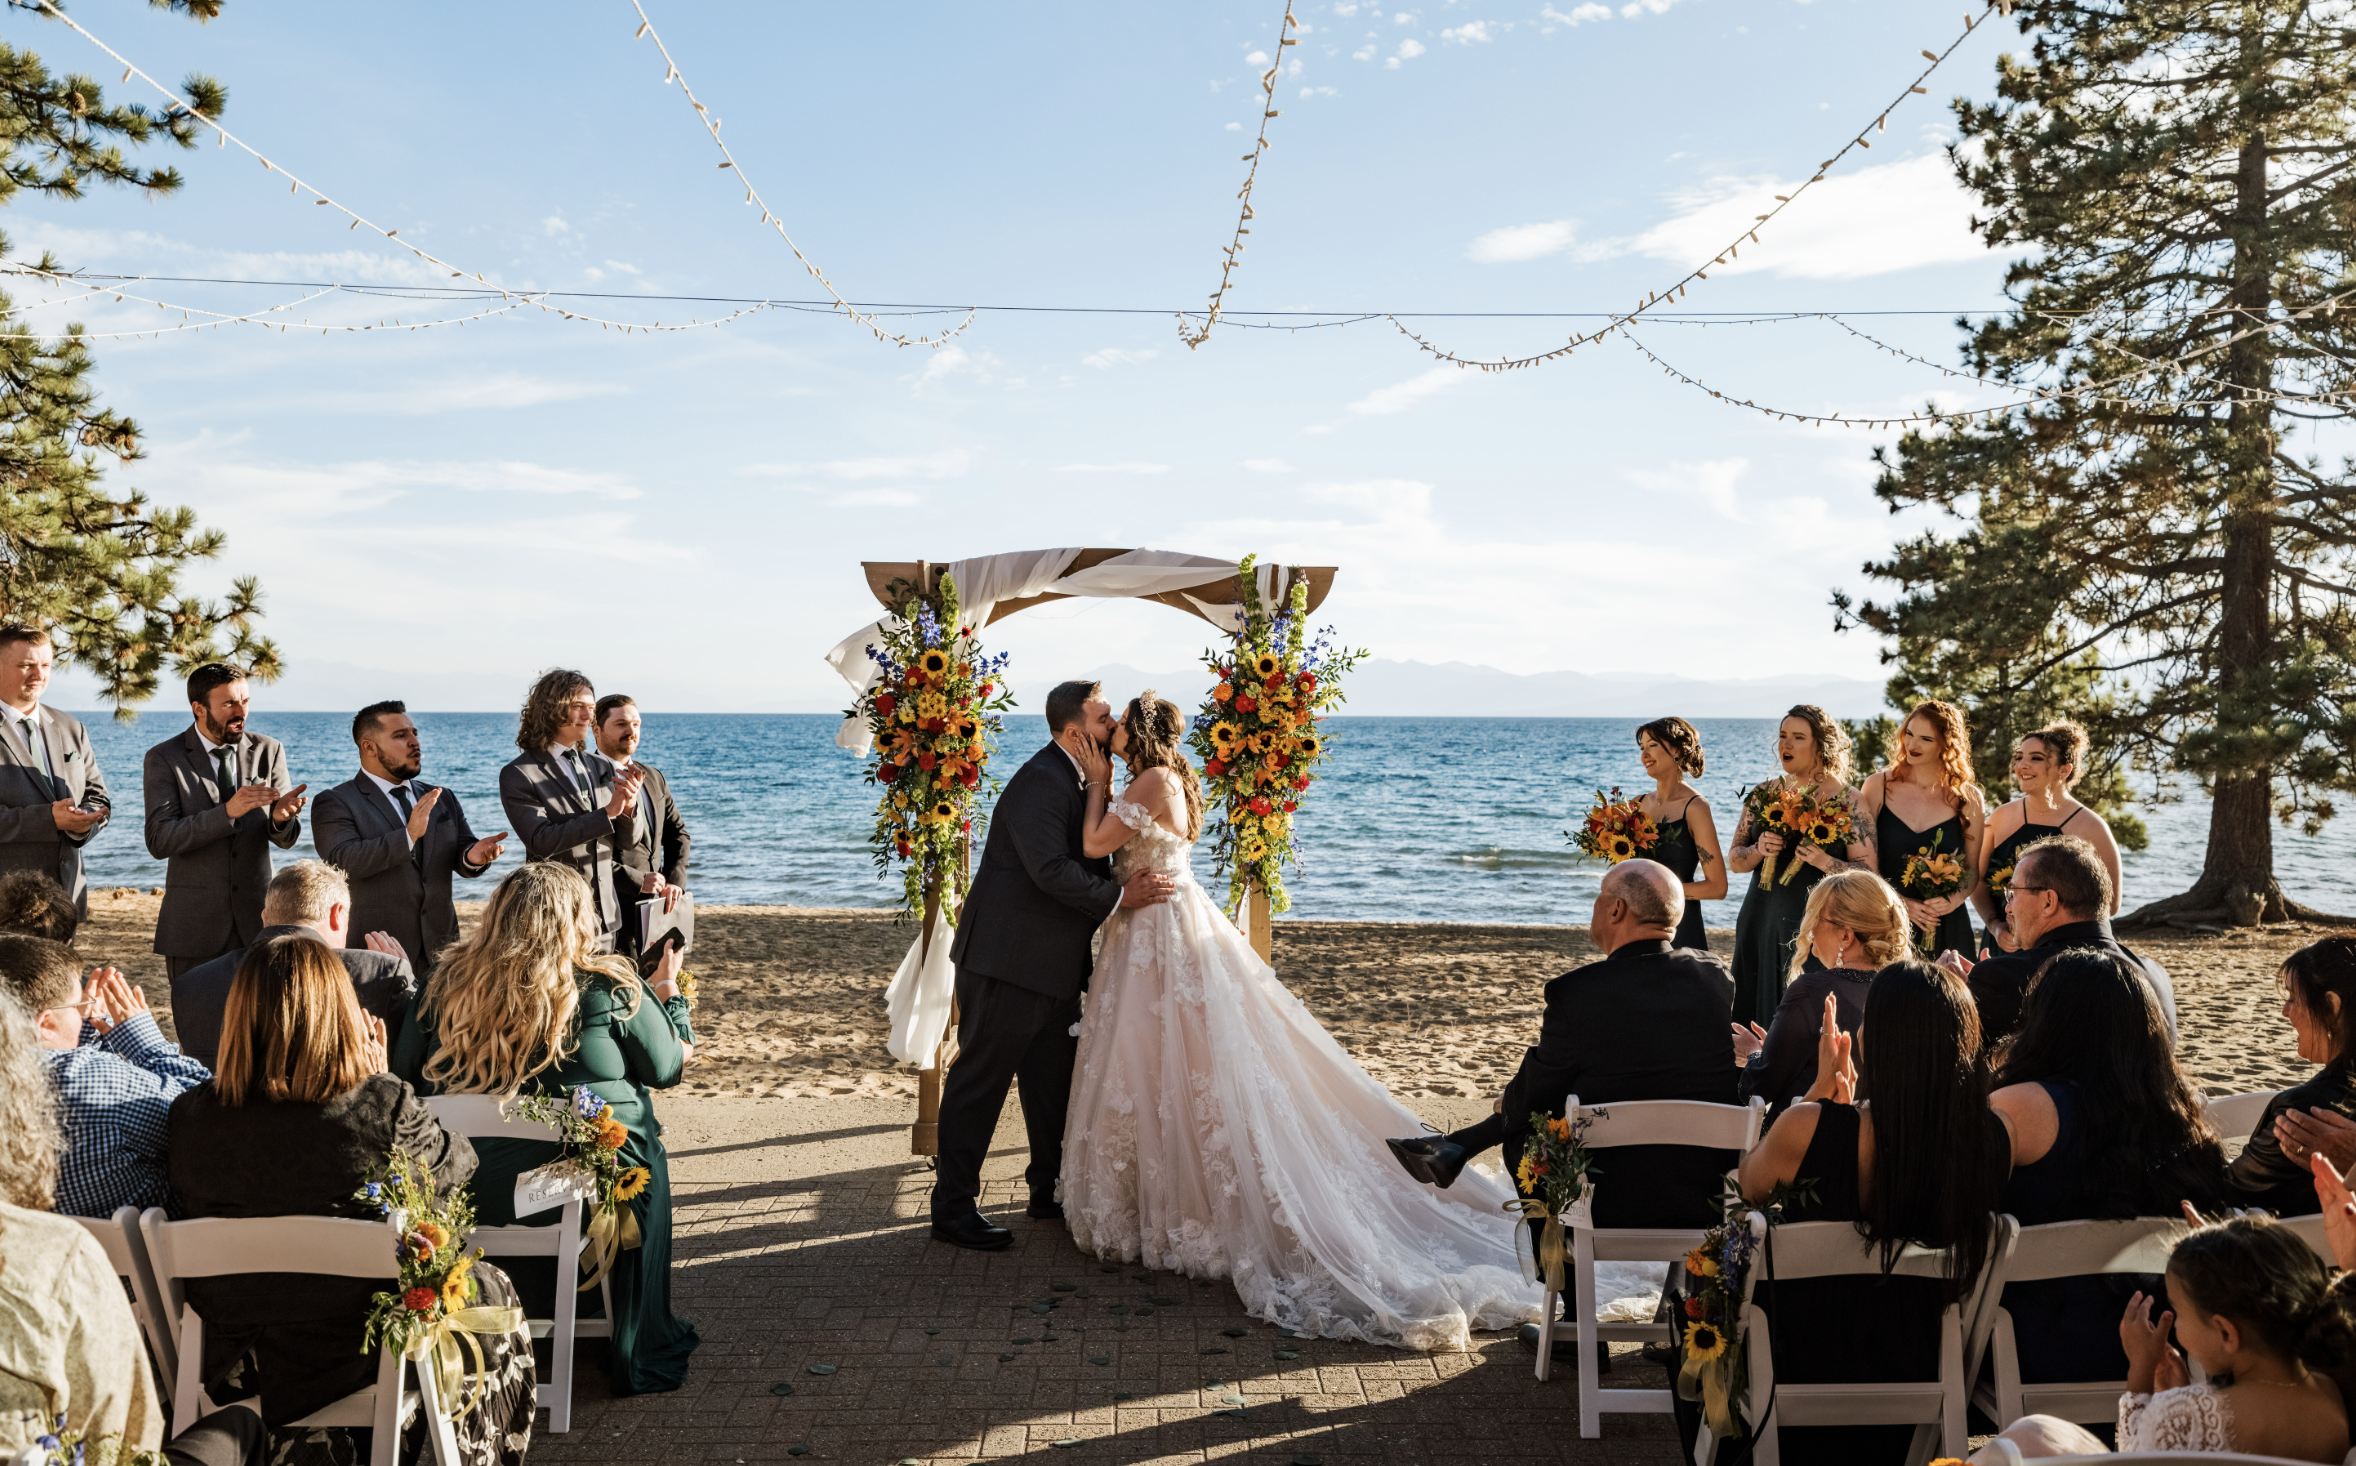 Indoor and outdoor wedding venue in Lake Tahoe, Indoor vs outdoor wedding